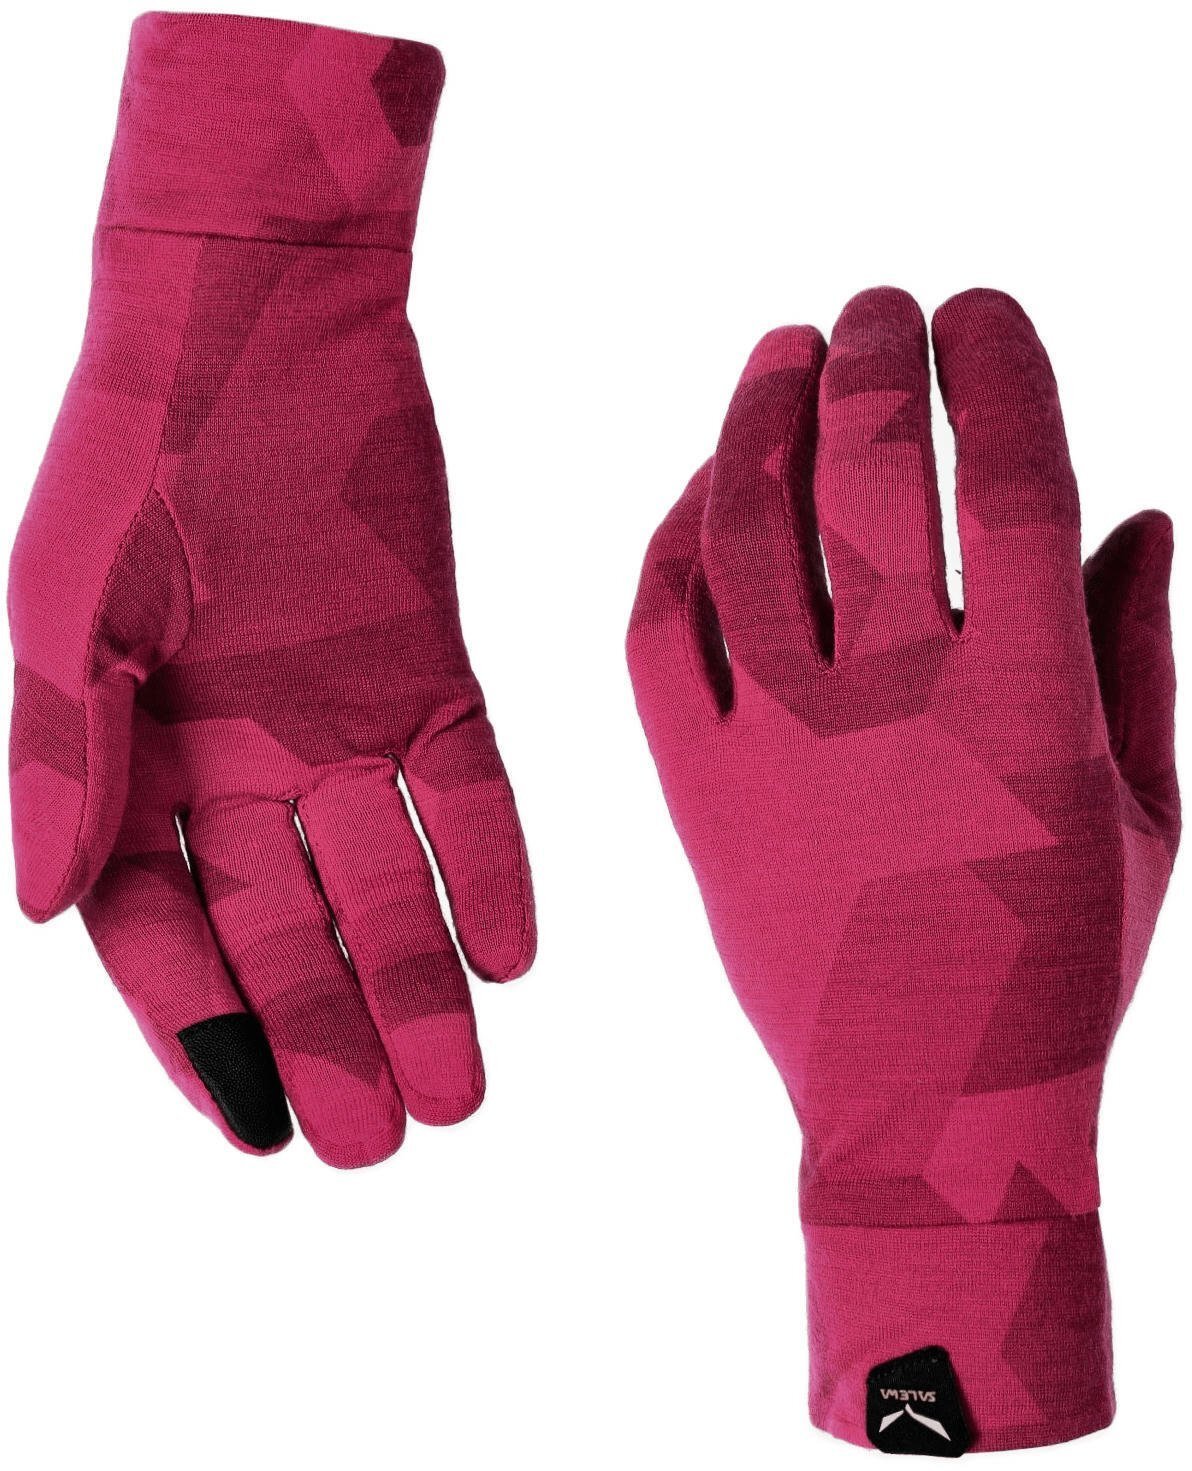 Рукавички жіночі Salewa Cristallo W Gloves 28514 6319 5/XS рожевийфото3